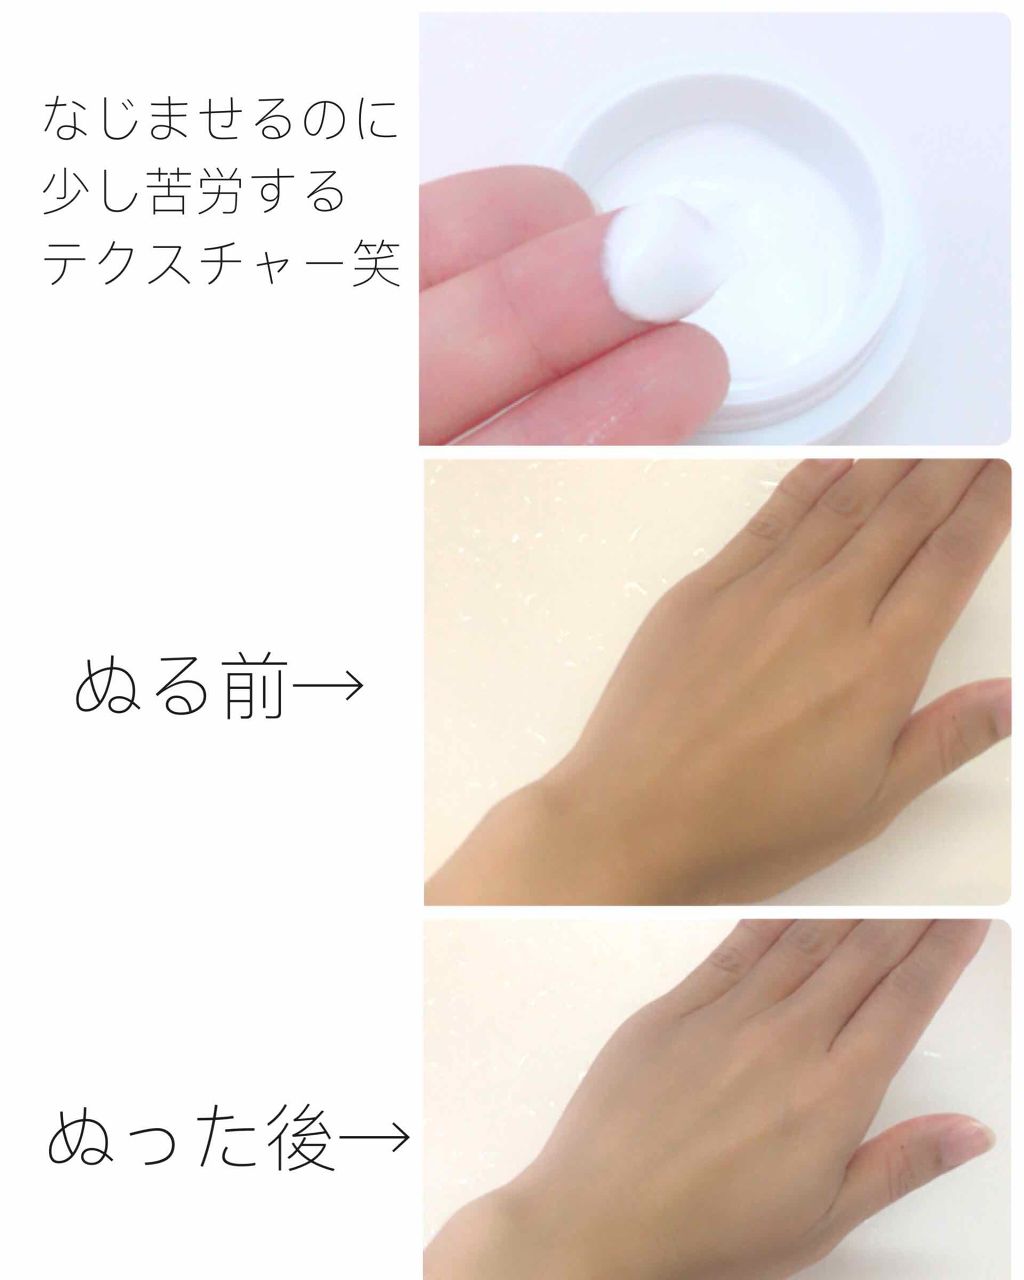 White Whipping Cream ウユクリーム G9 Skinの口コミ 乾燥肌におすすめの化粧下地 2枚目 使用画像ありま By Minmin 敏感肌 30代後半 Lips